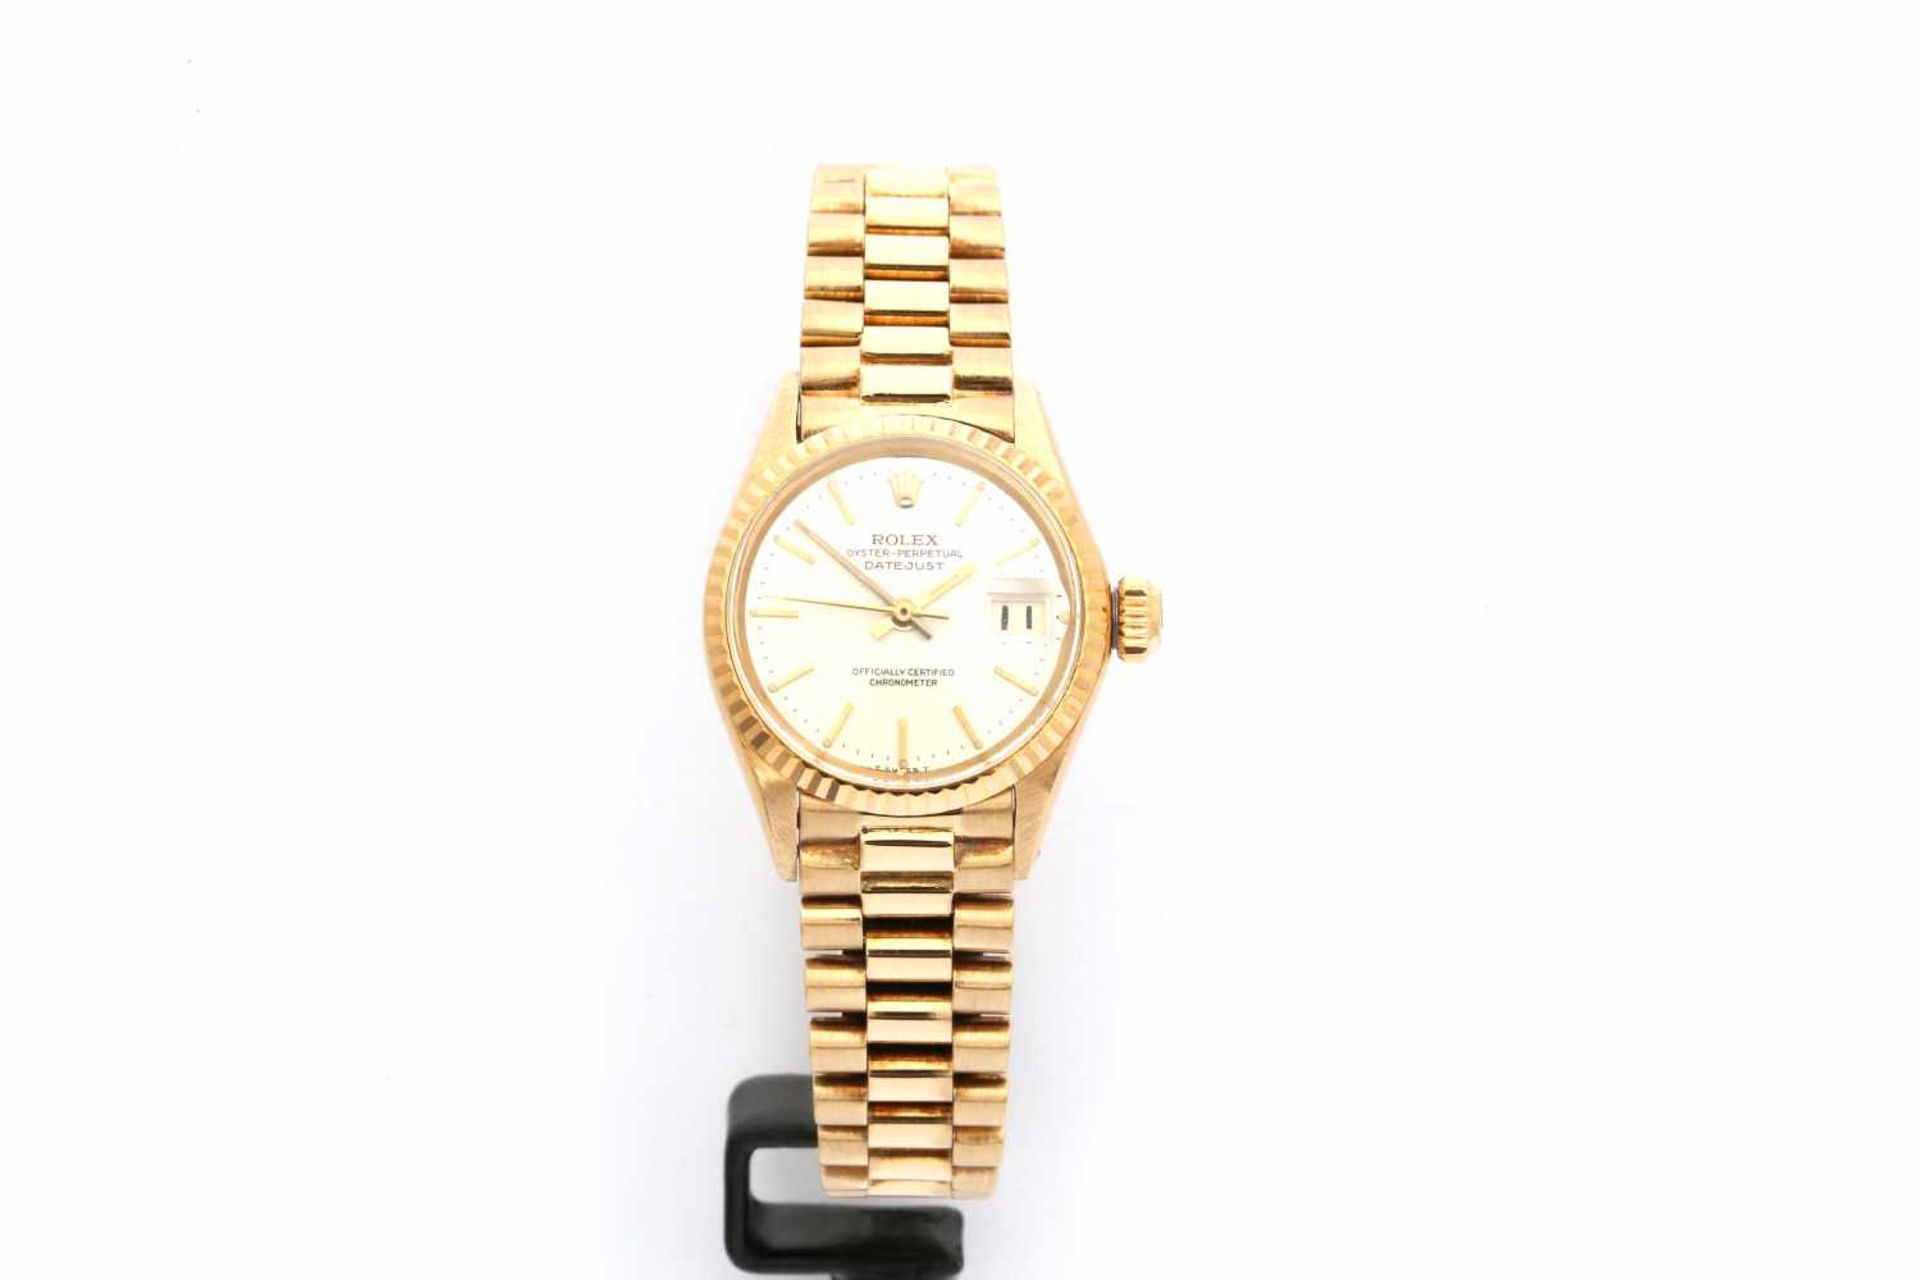 Rolex Lady Datejust 18K Gold, Referenz: 6517, Jahrgang 1961, Plexiglas, Datumsanzeige, Durchmesser - Bild 4 aus 6